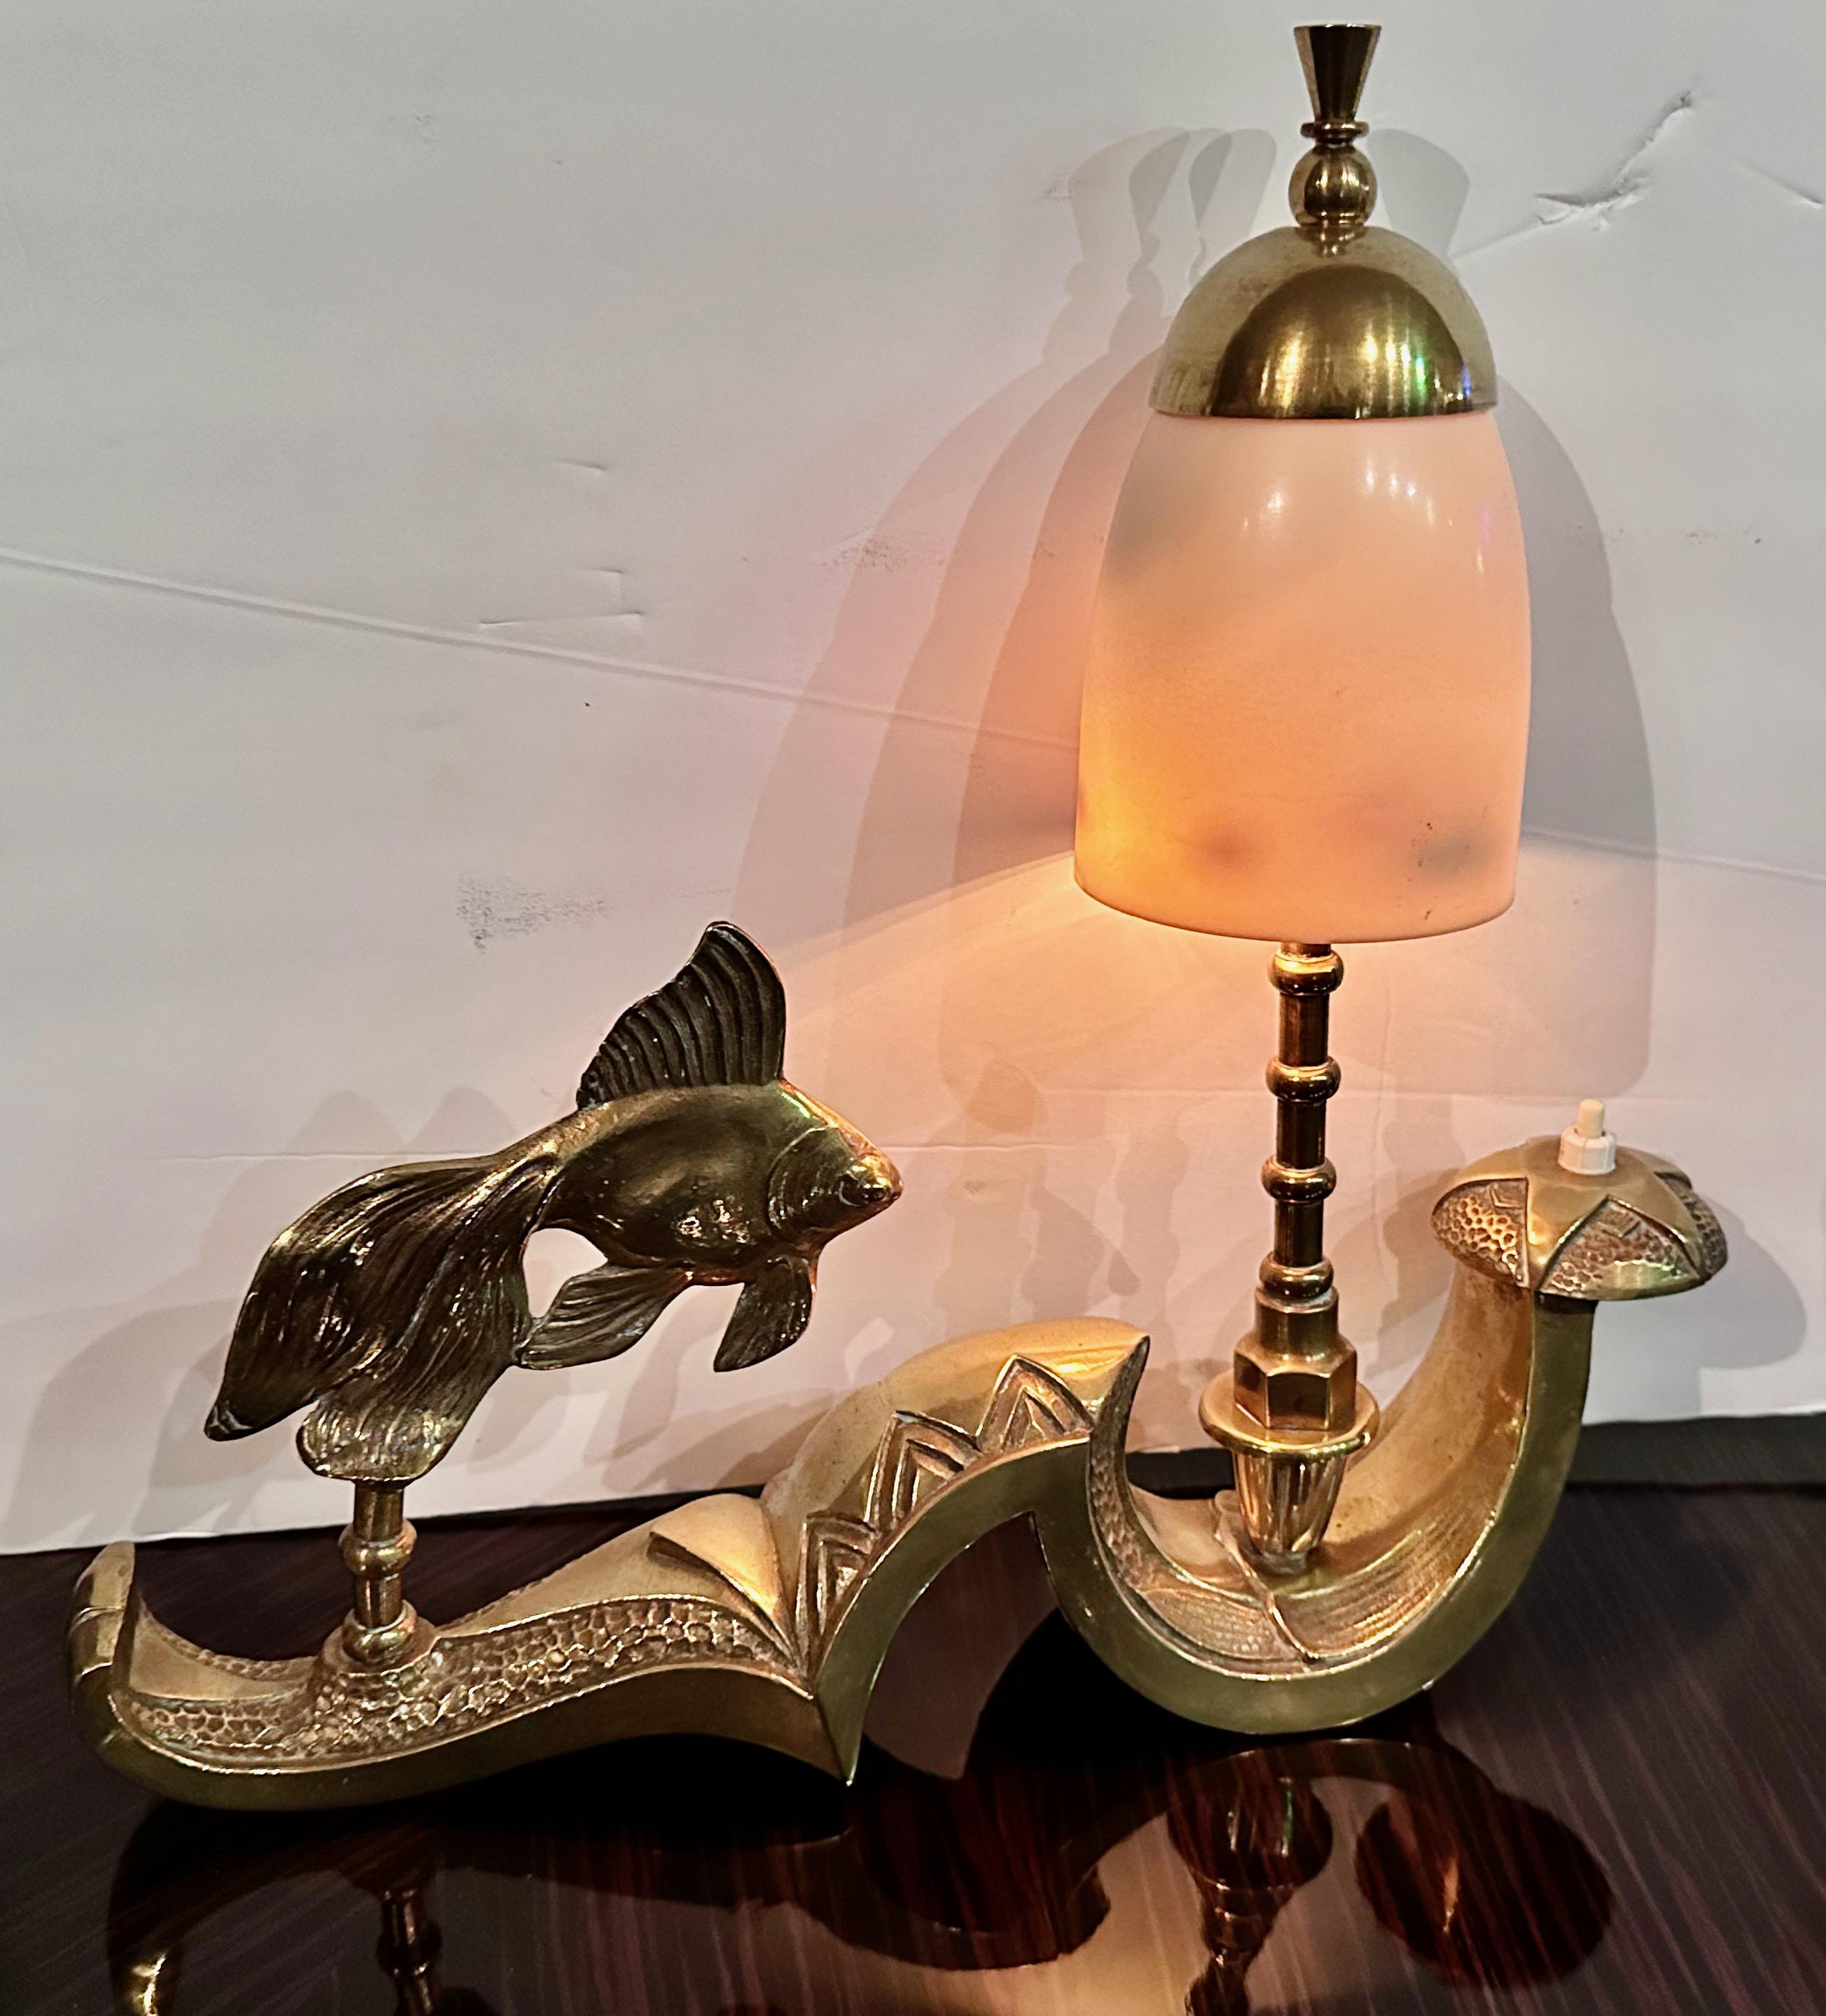 La lampe de table Art Deco Fish Sculpture de France est une pièce unique fabriquée en laiton, dotée d'une lumière d'appoint intégrée et d'une base ornée. Sa texture complexe et l'attention méticuleuse portée aux détails suggèrent un investissement